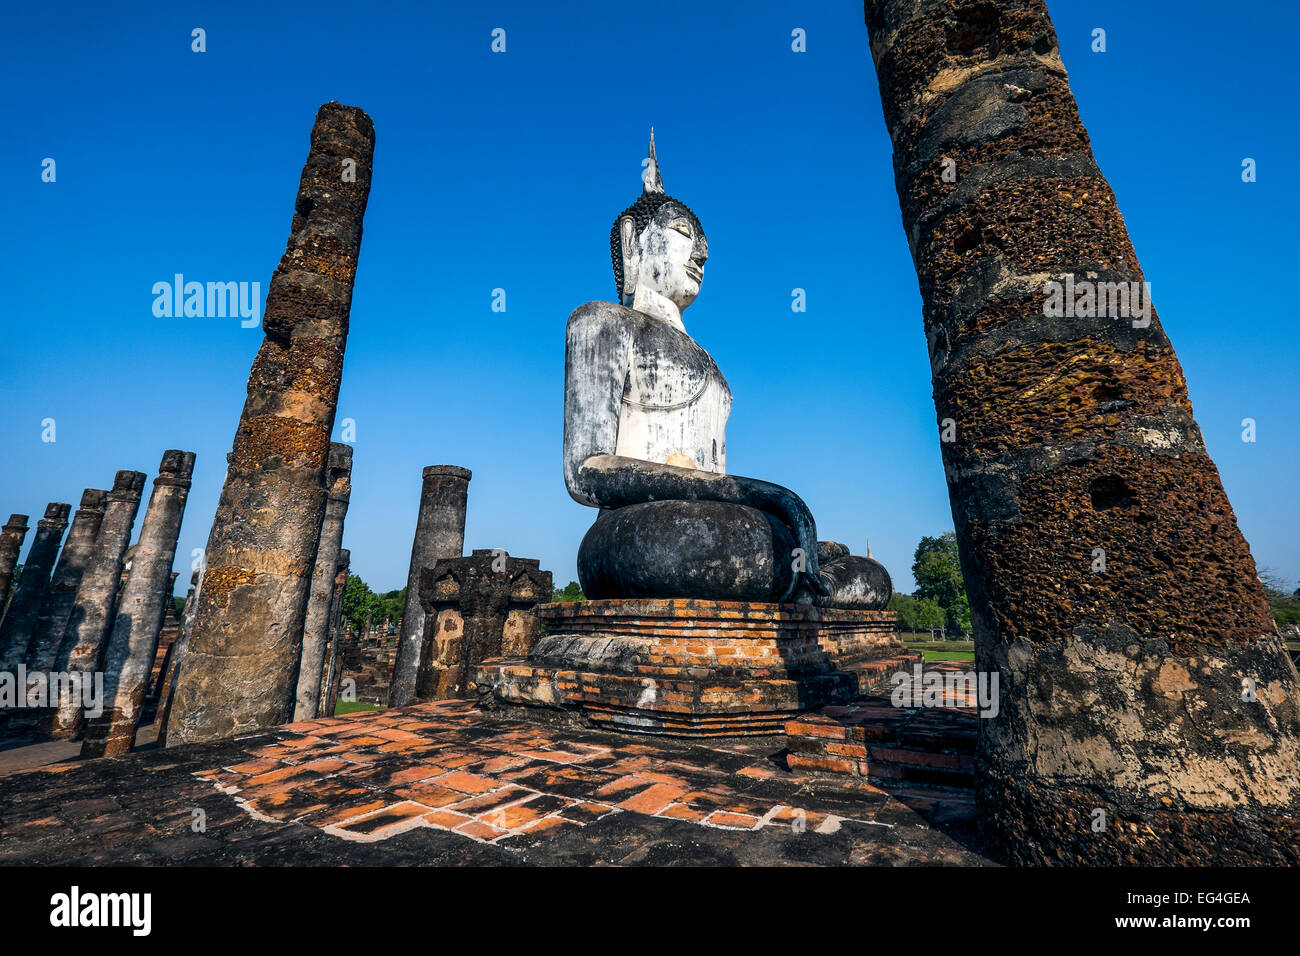 L'Asie. La Thaïlande, l'ancienne capitale du Siam. Parc archéologique de Sukhothai, classé au Patrimoine Mondial de l'UNESCO. Wat Mahathat statue de Bouddha Banque D'Images